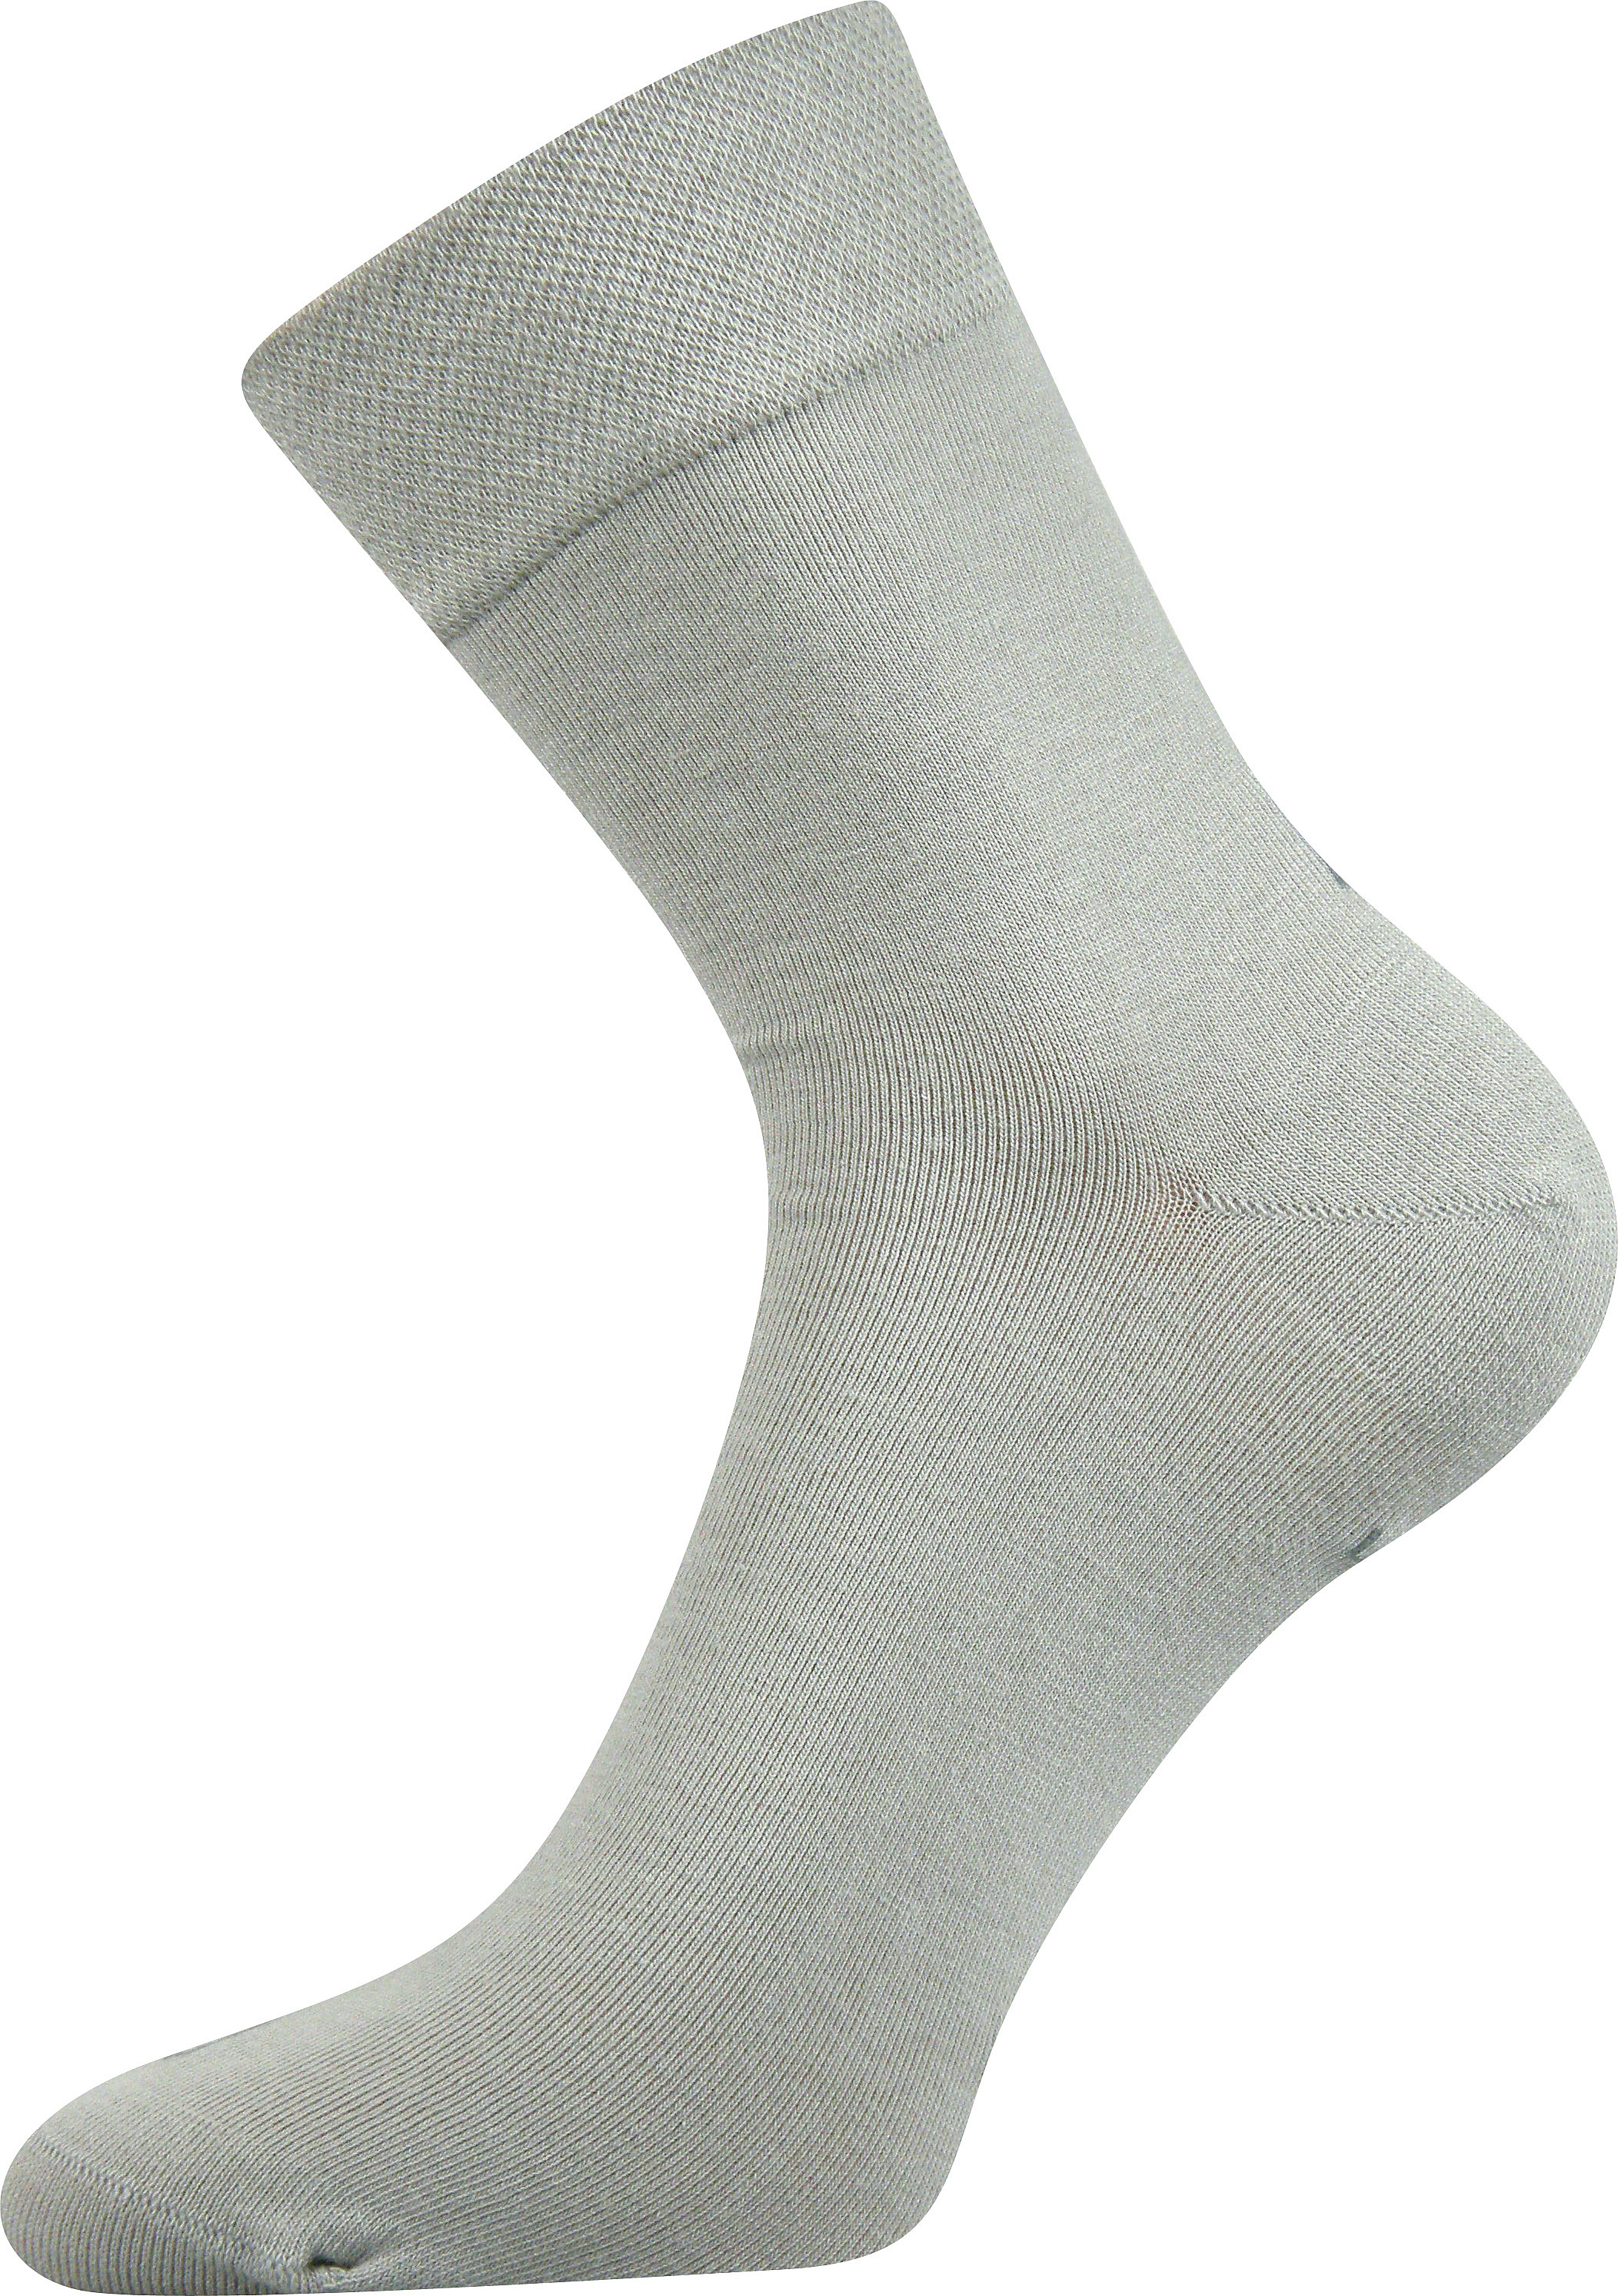 Ponožky společenské Lonka Haner - světle šedé, 43-46